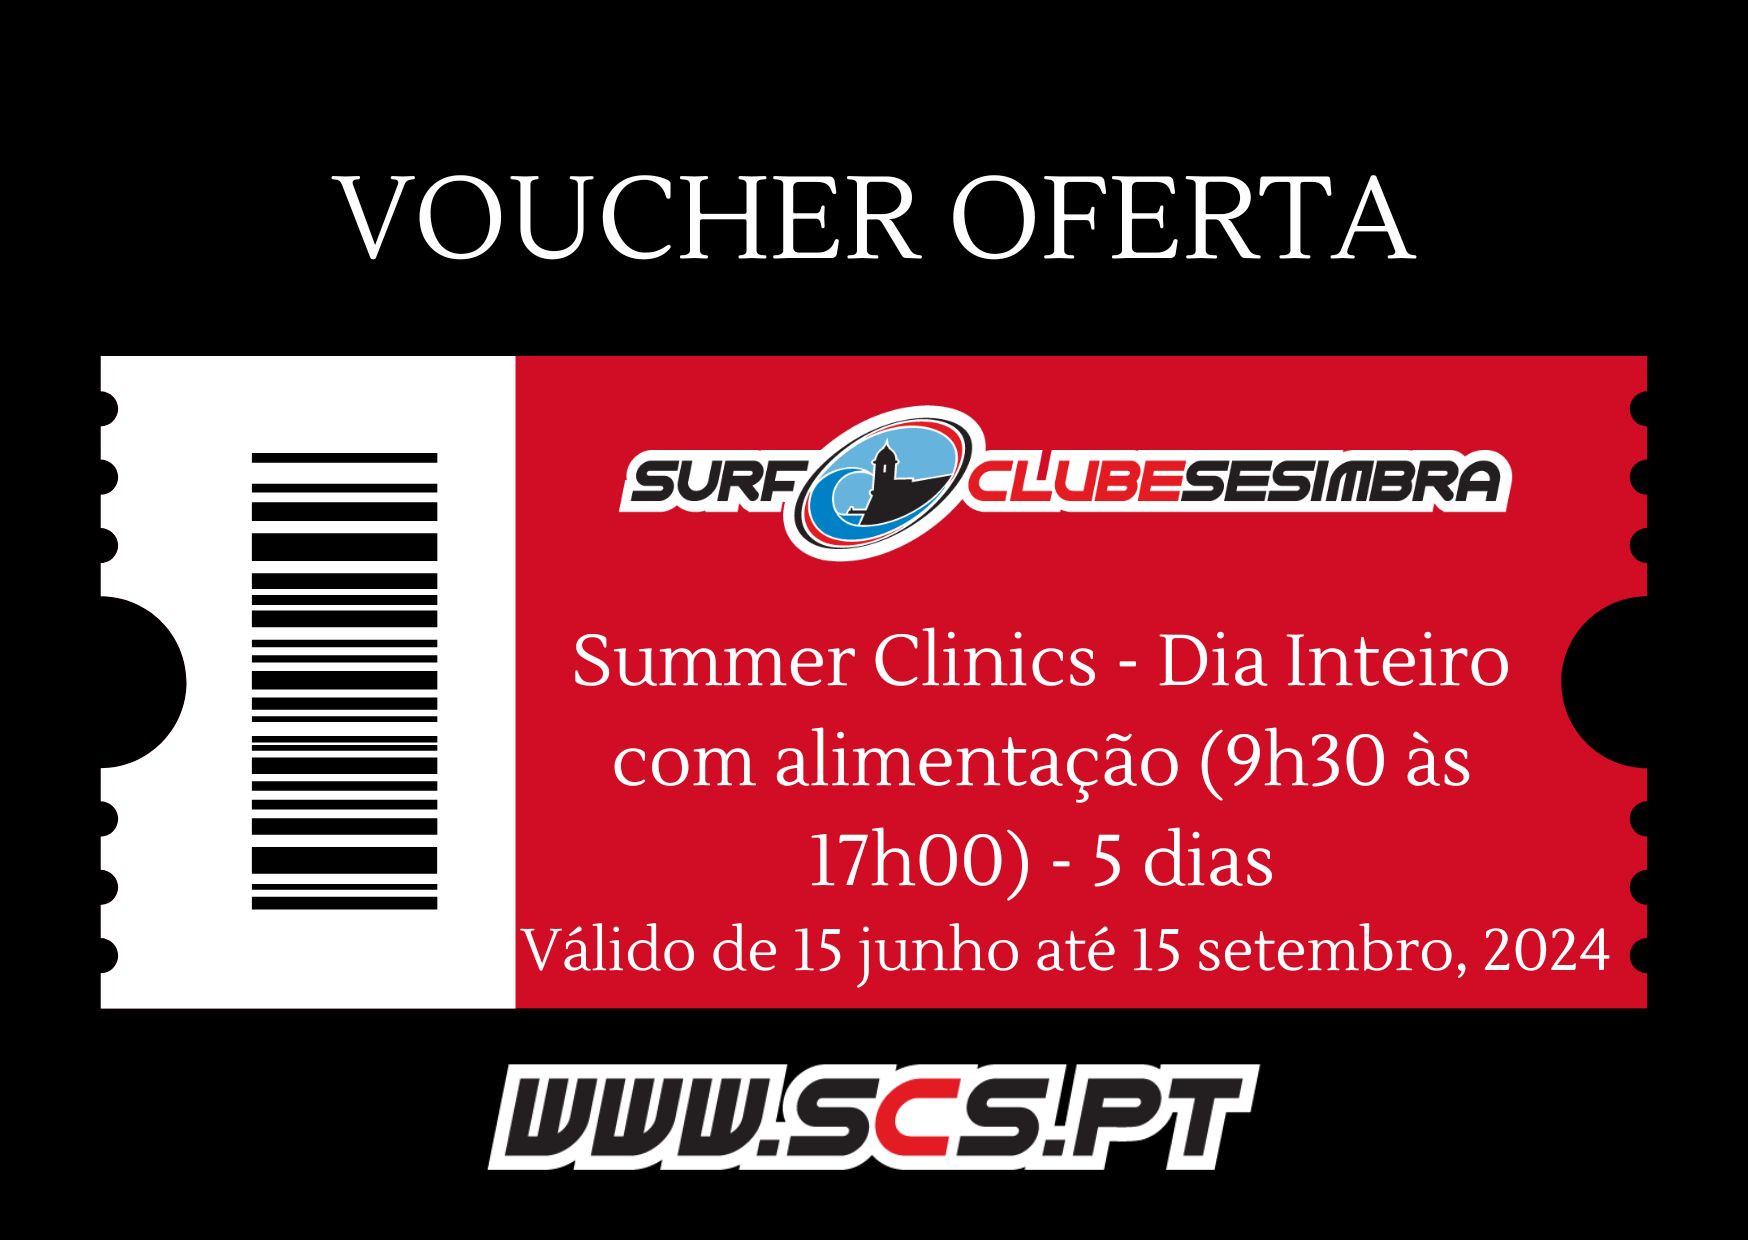 Voucher Oferta Summer Clinics - Dia Inteiro com alimentação (9h30 às 17h00) - 5 dias